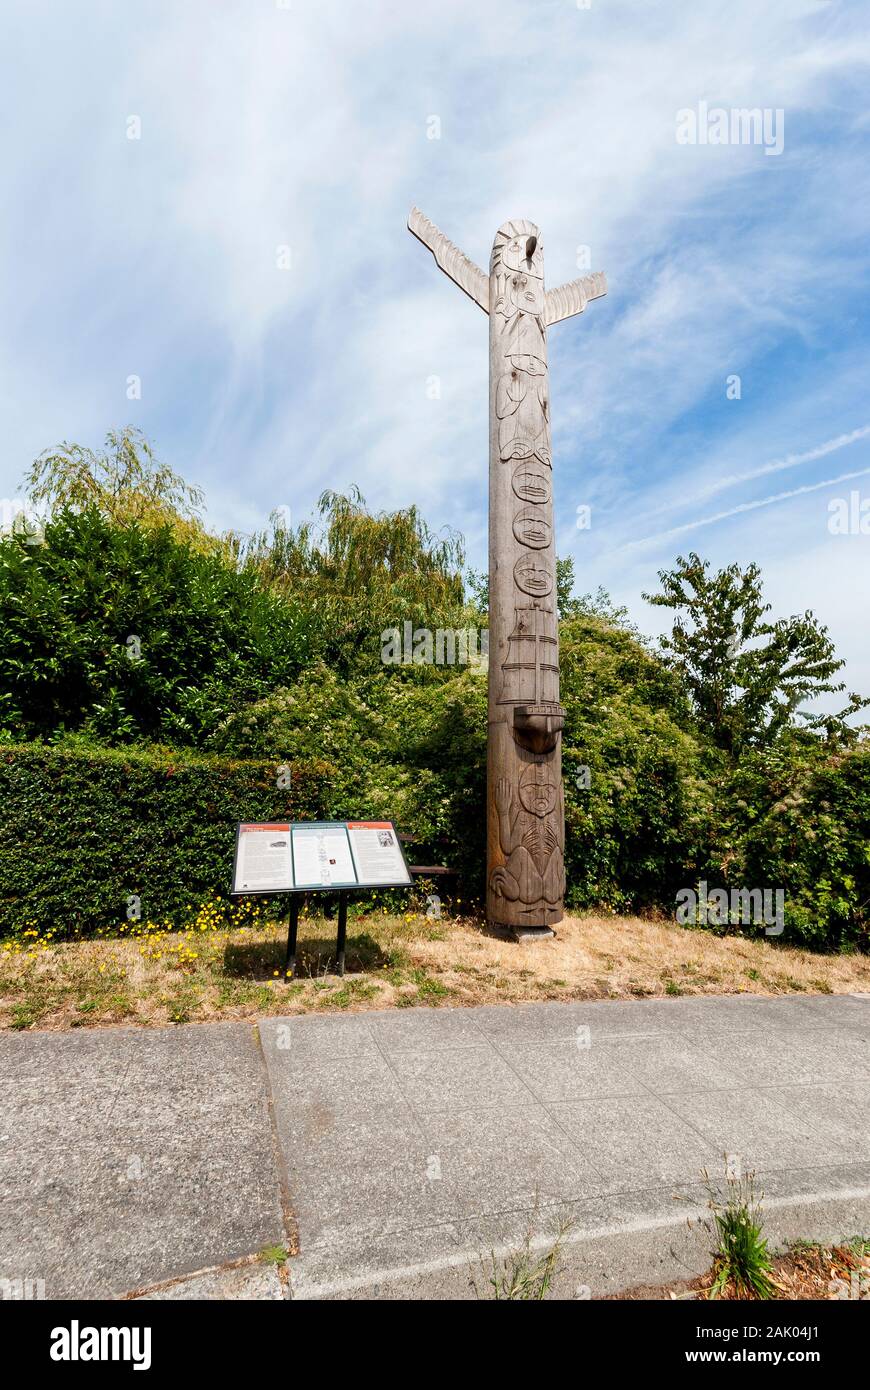 Admiral Viewpoint Totem Pole nella zona ovest di Seattle, Washington. Foto Stock